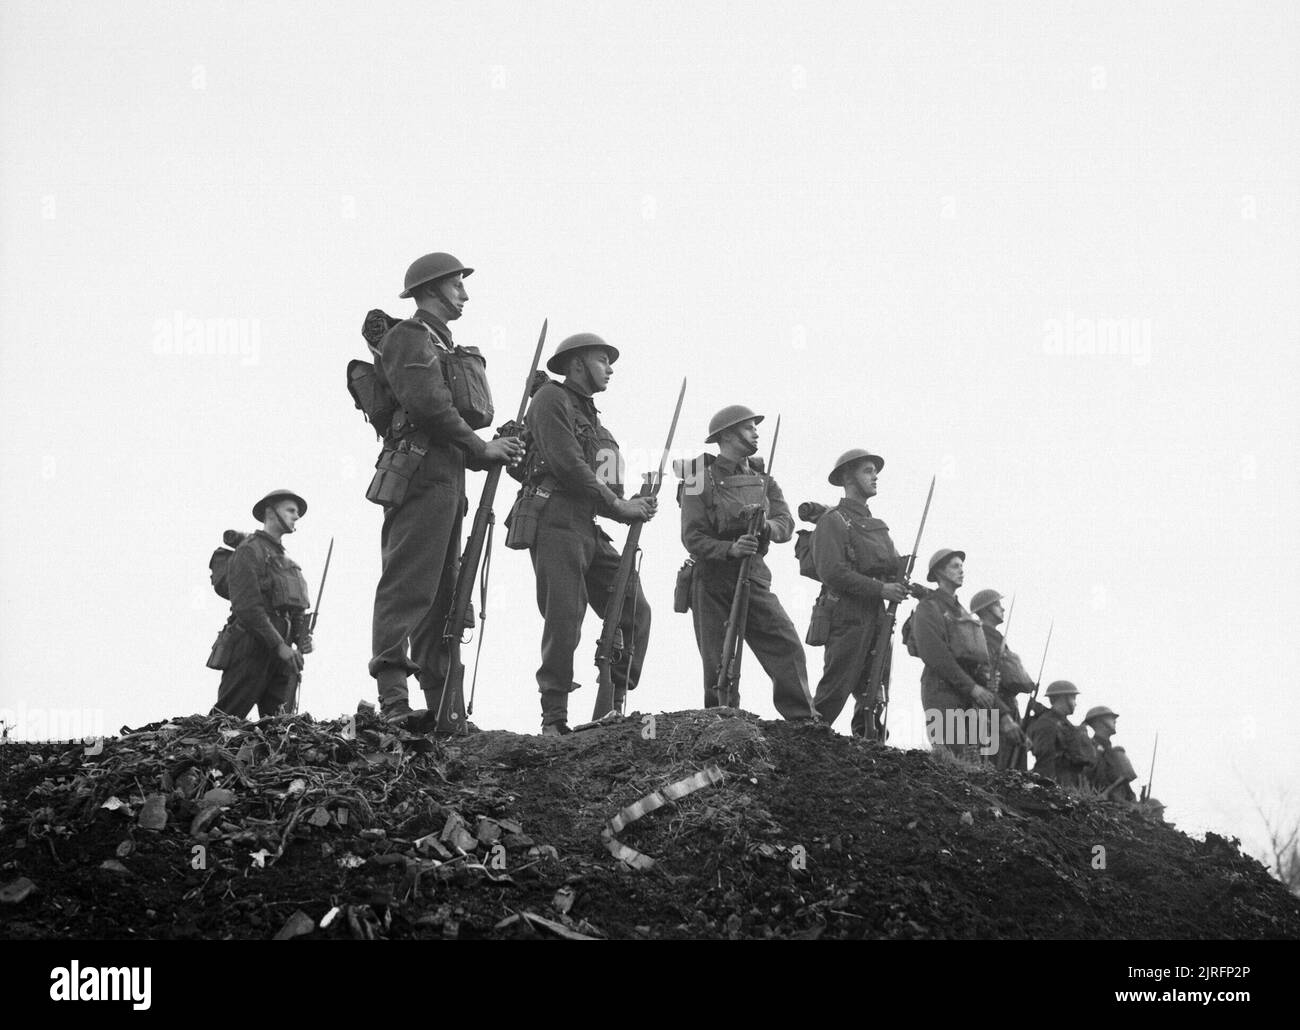 Des soldats de l'East Surrey Regiment posent avec baïonnette à Chatham, dans le Kent, le 25 novembre 1940. Des soldats de l'East Surrey Regiment posent avec baïonnette à Chatham, dans le Kent, le 25 novembre 1940. Banque D'Images